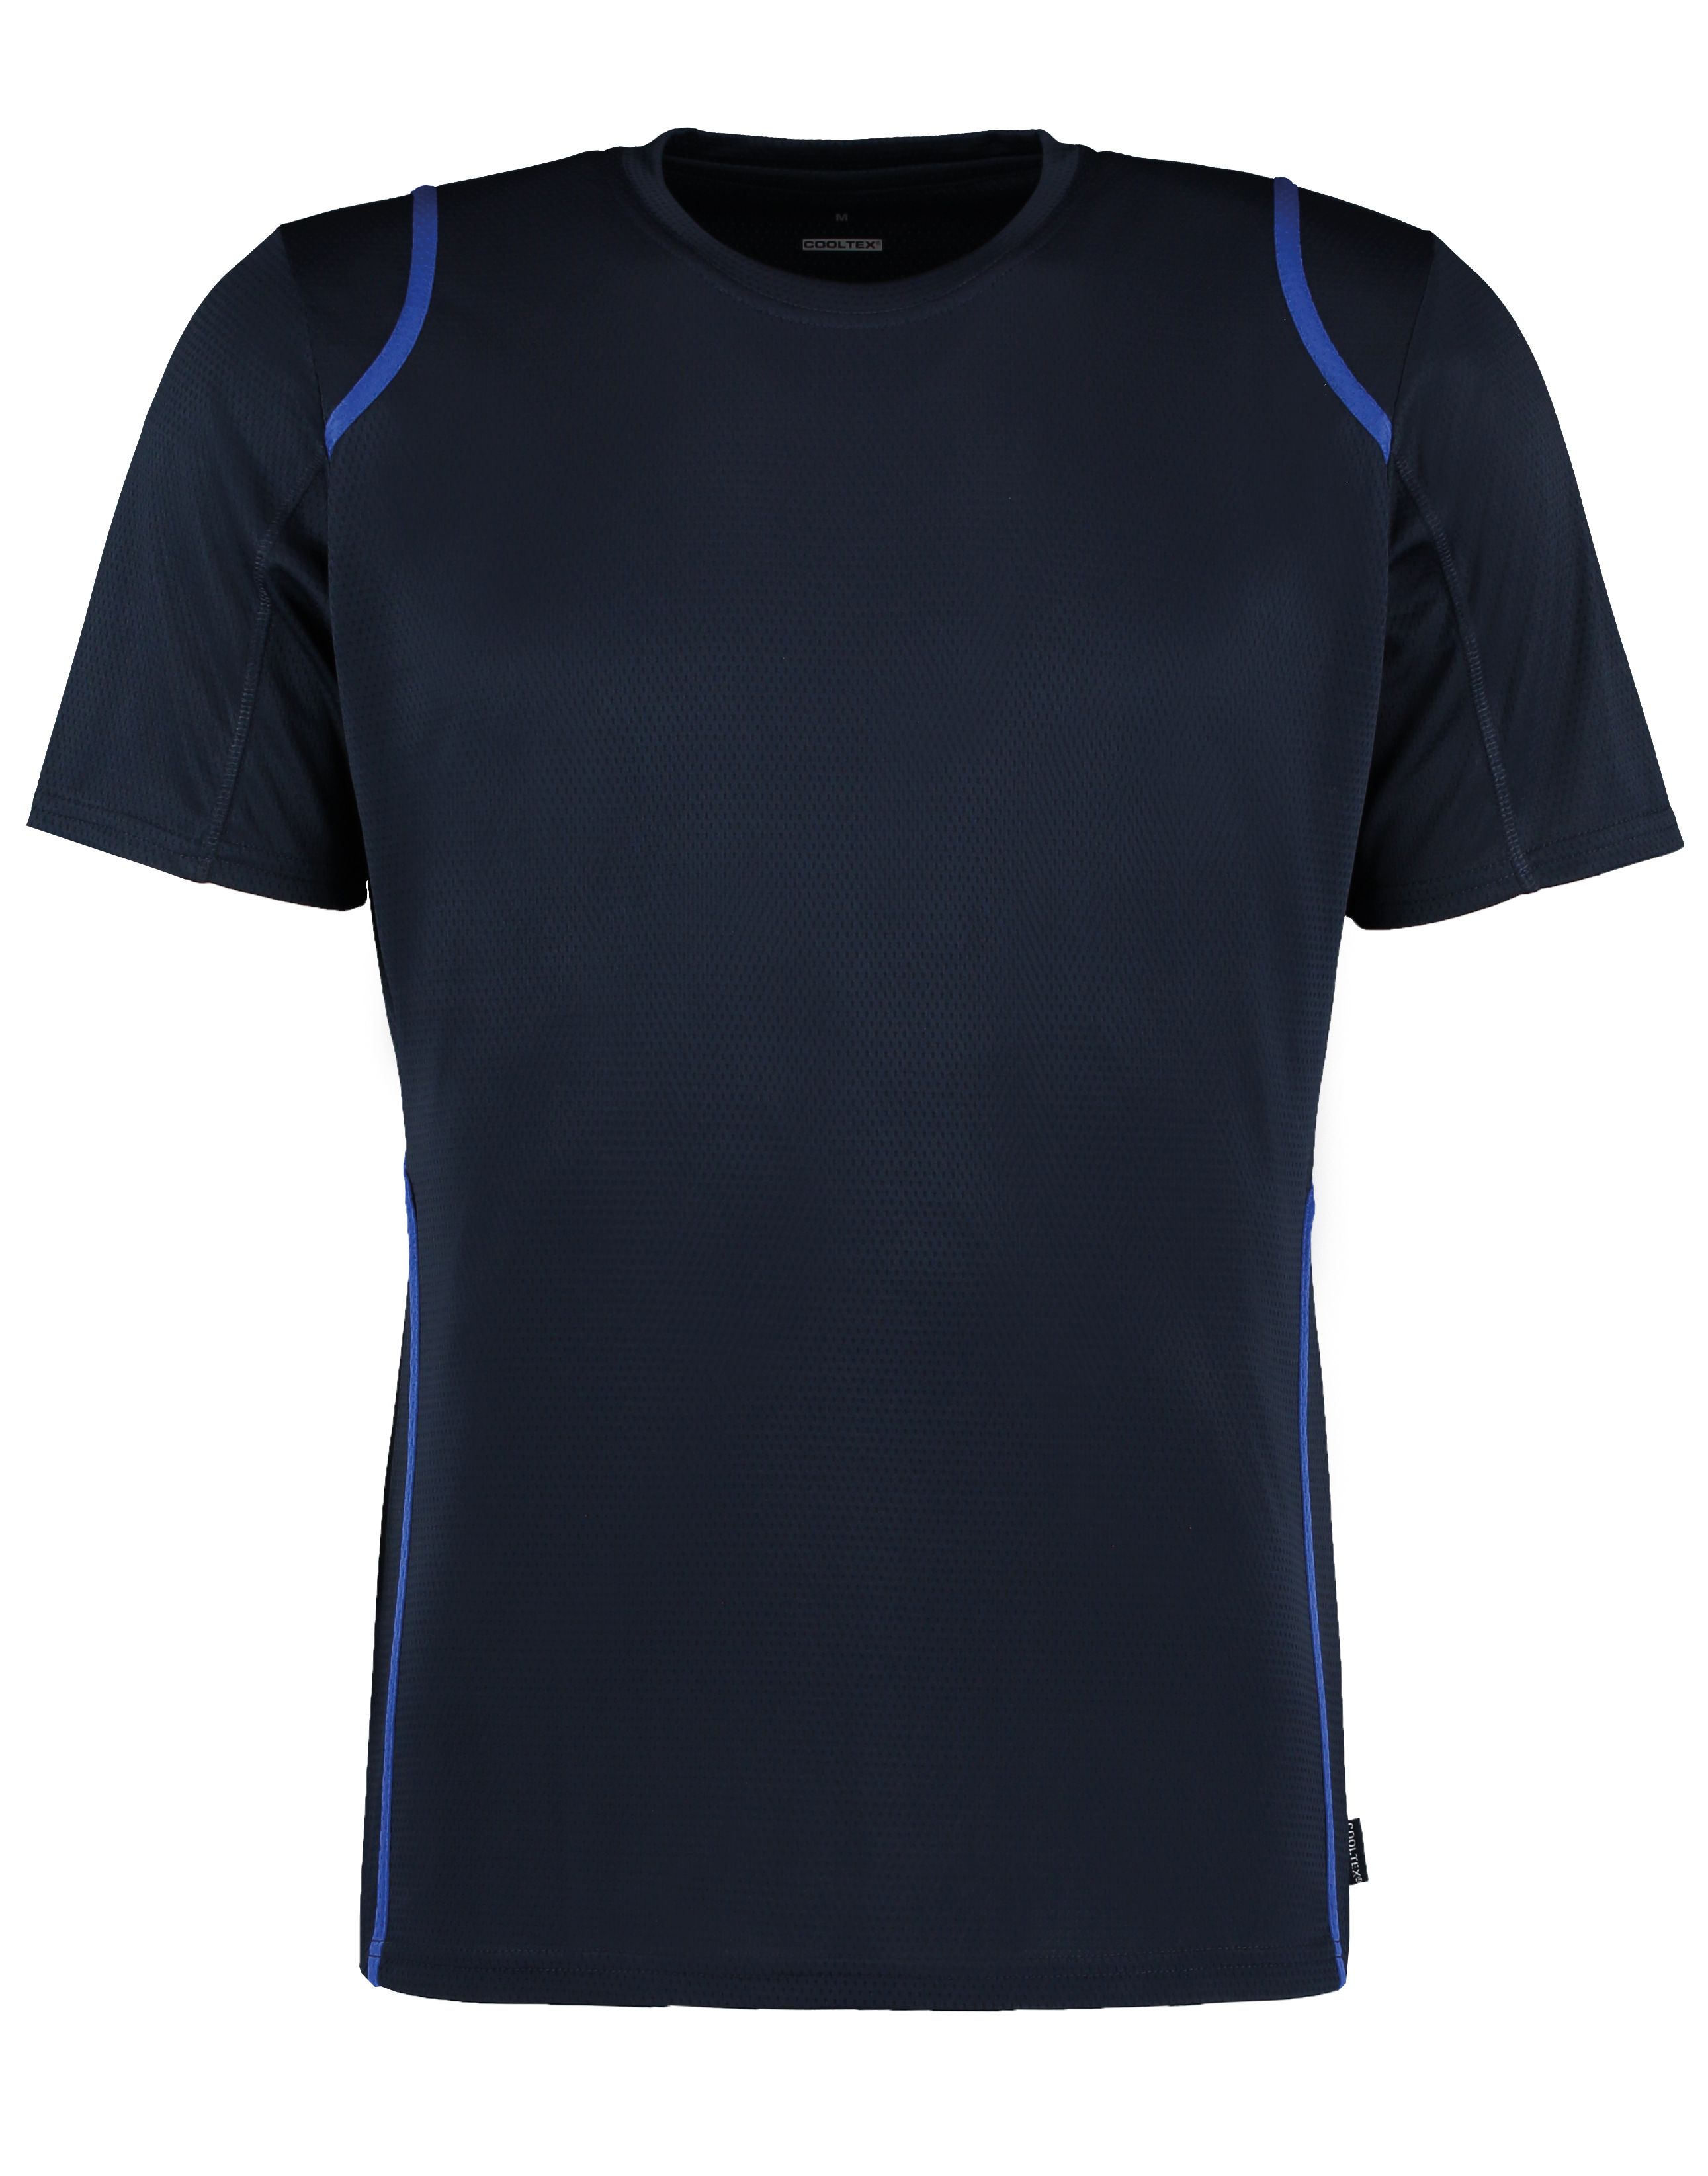 Gamegear Cooltex t-shirt short sleeve (regular fit) (KK991) - Logo ...